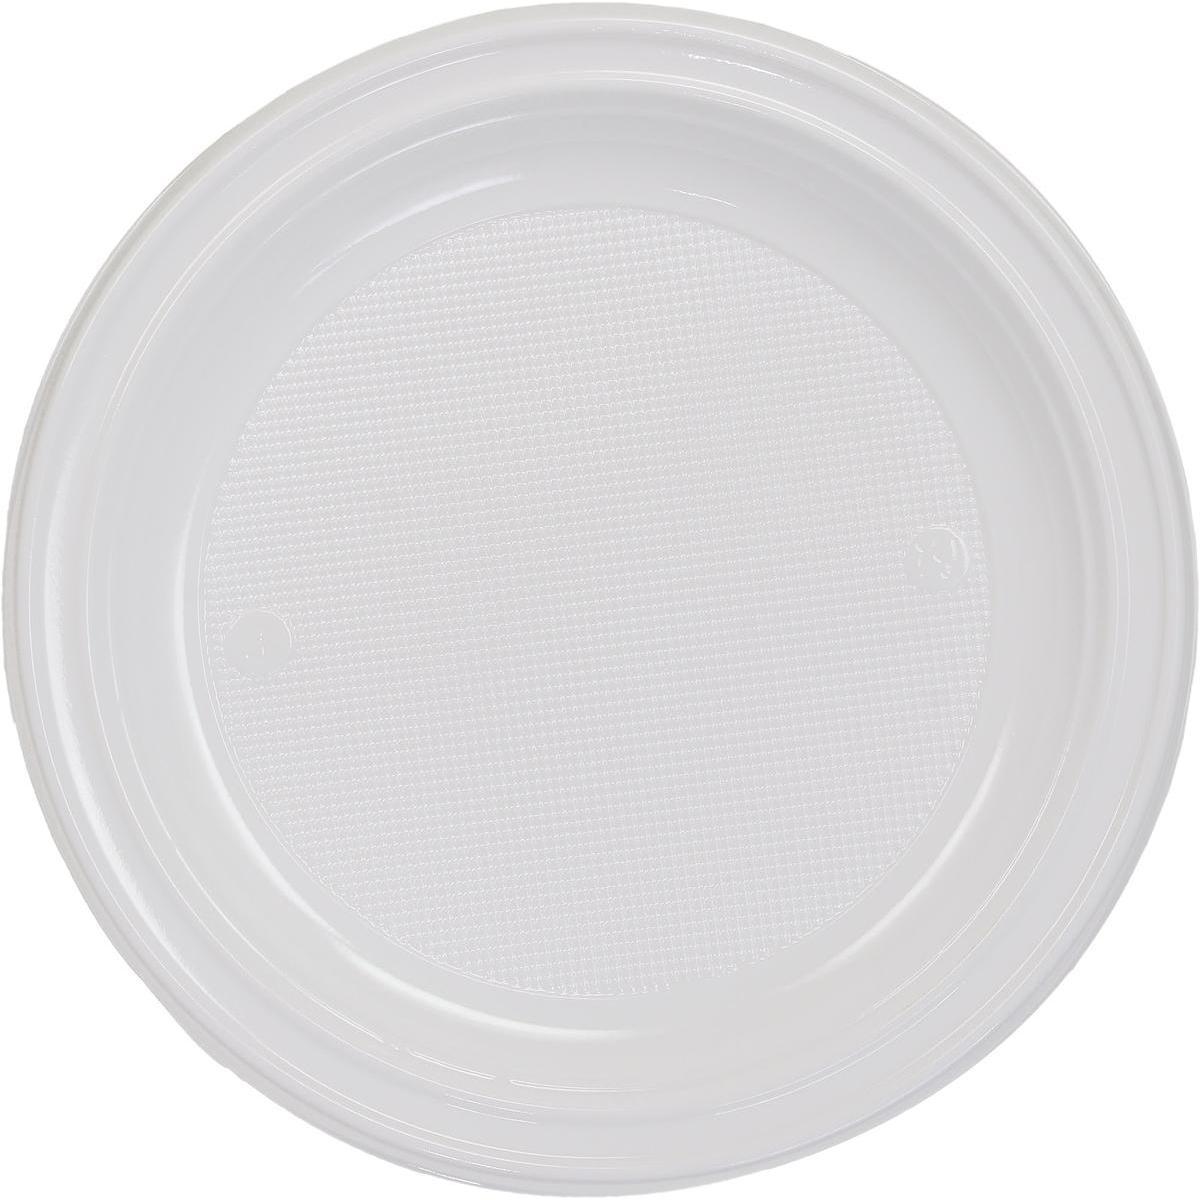 Lot de 50 assiettes en plastique - 20,5 cm - Polystyrène - Blanc